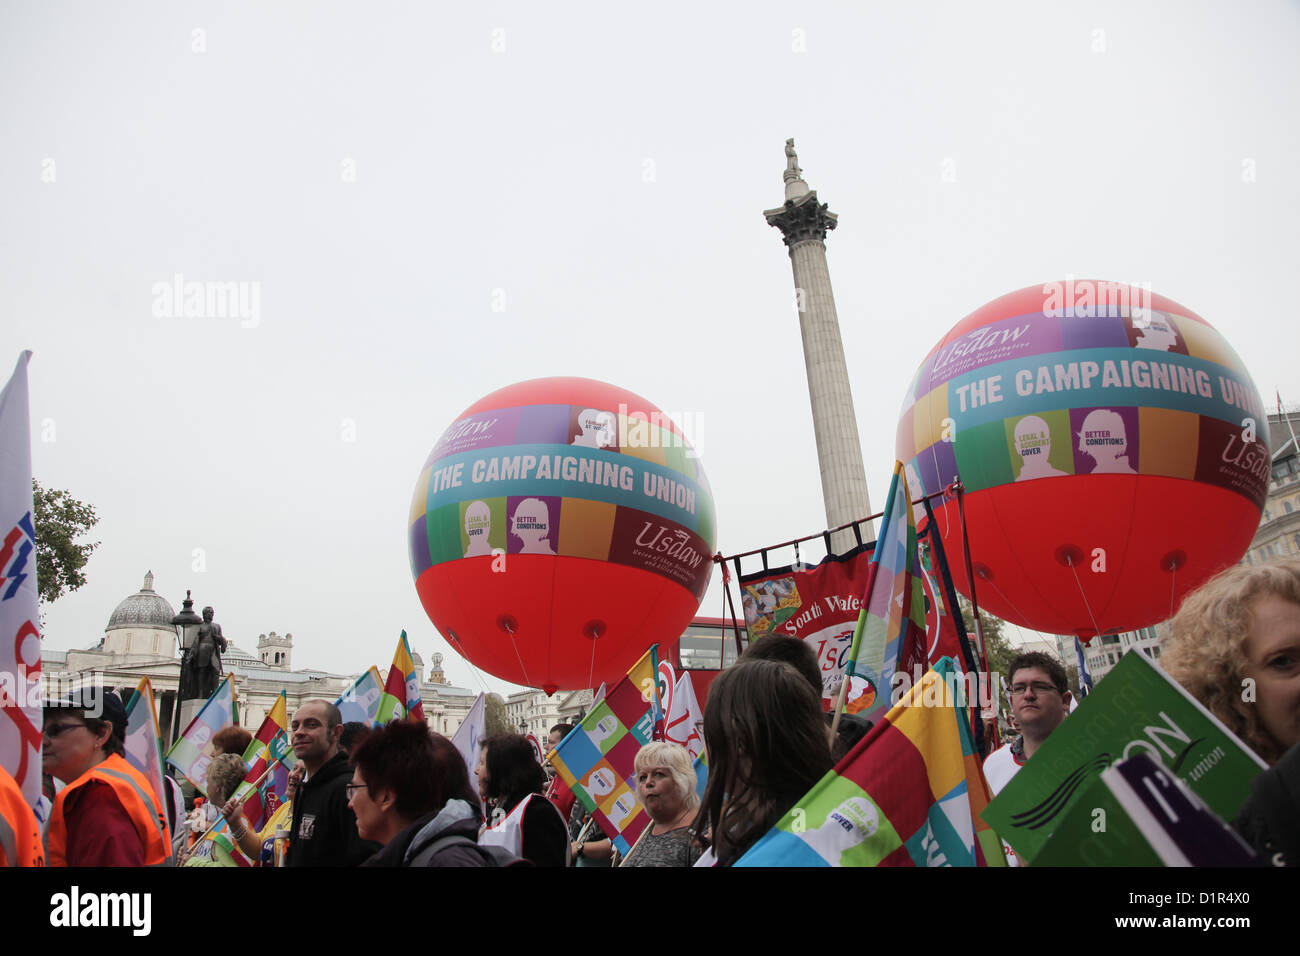 La dimostrazione si muove attraverso Trafalgar Square. 10s di migliaia si rivelò a manifestare contro i tagli operati dal governo. Foto Stock